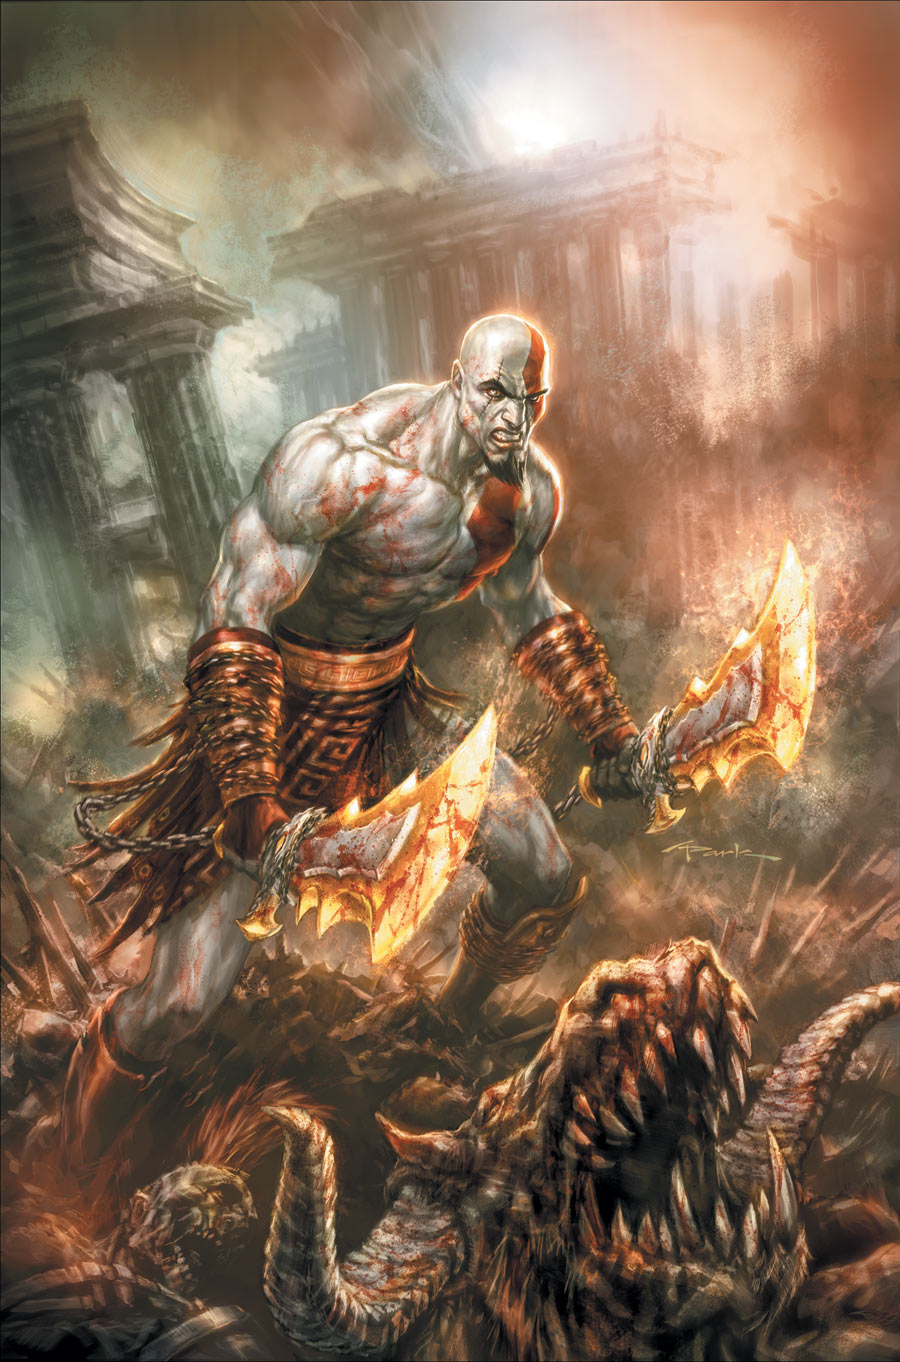 God of War — Detonado - God of War 1